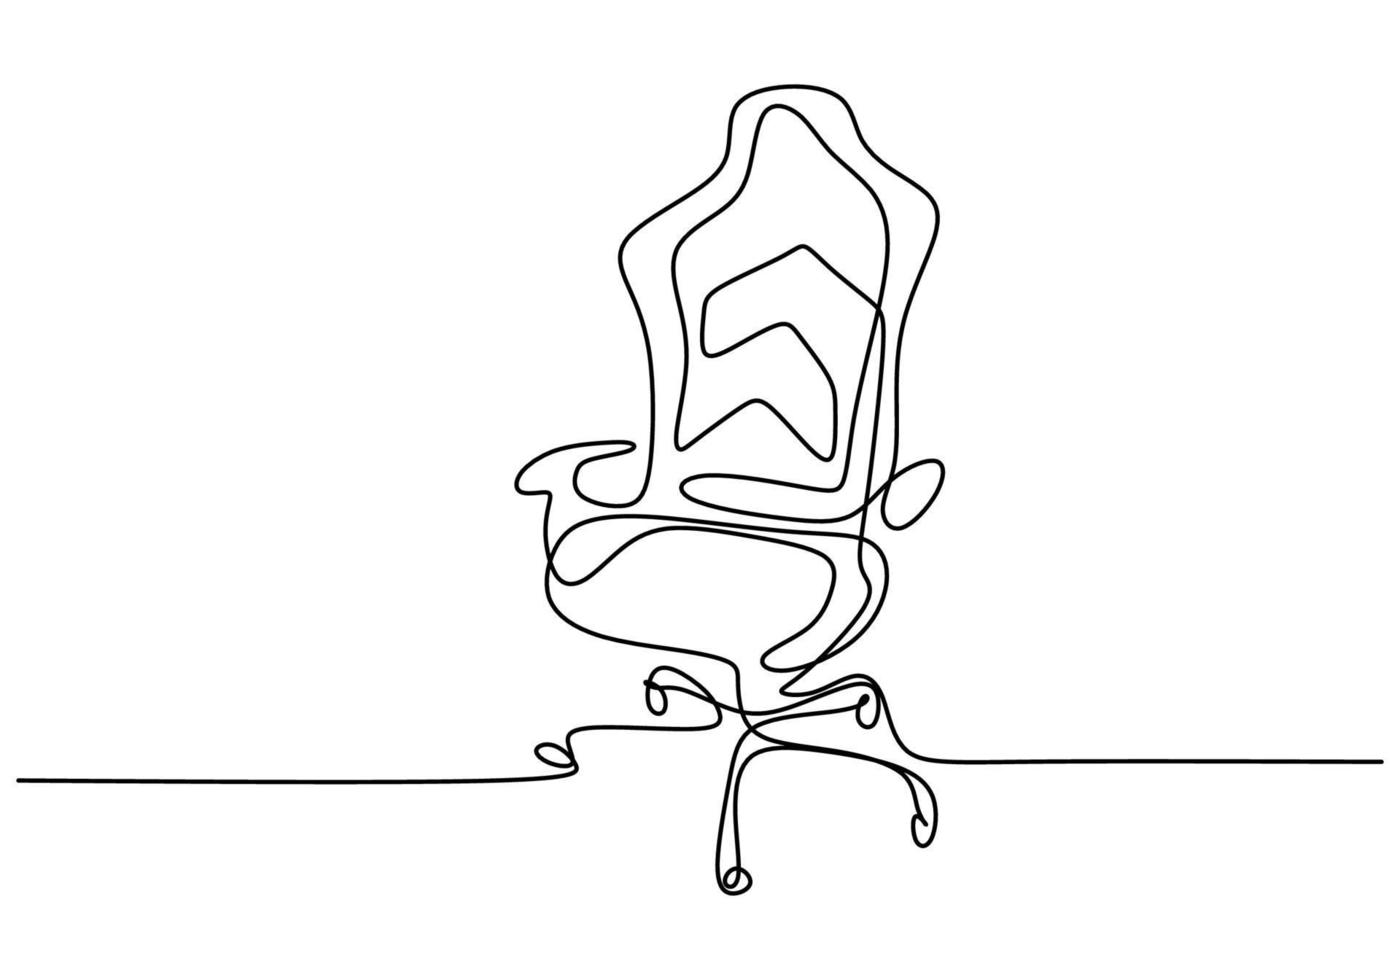 sedia da ufficio con disegno continuo a una linea. moderna sedia da lavoro isolato su sfondo bianco. comoda sedia da ufficio per il lavoro dal design minimalista. concetto di interni ufficio elegante. illustrazione vettoriale